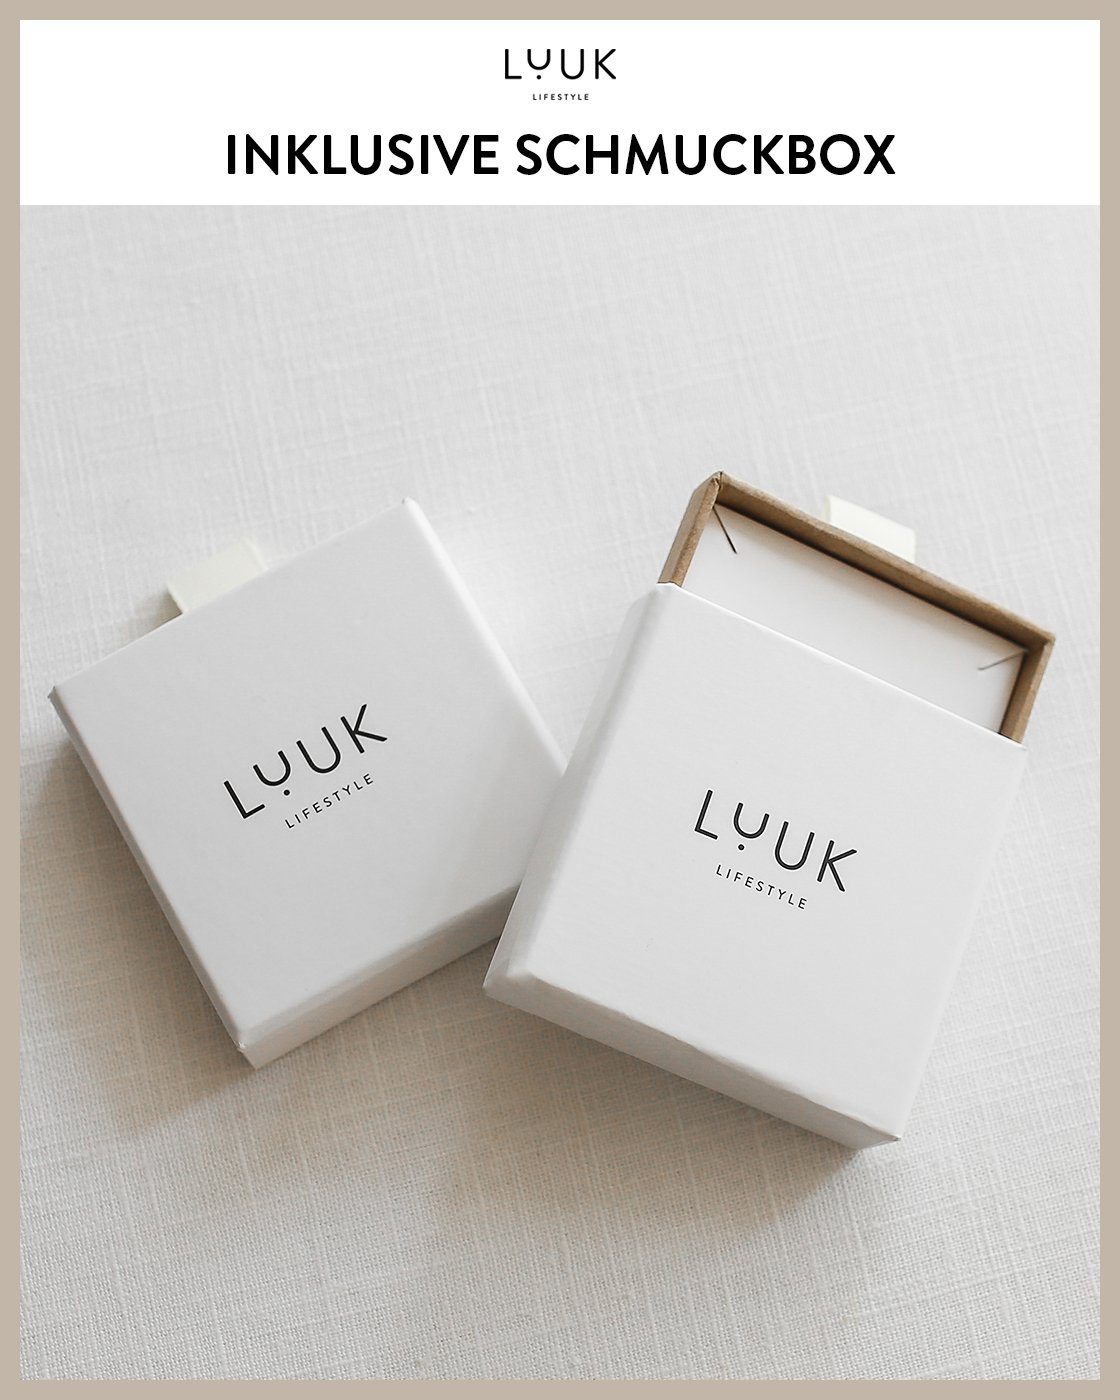 Paar Schmuckbox LUUK & inklusive Ohrstecker wasserfest Viereck, Design, LIFESTYLE schöner modernes alltagstauglich, Gold hautverträglich,